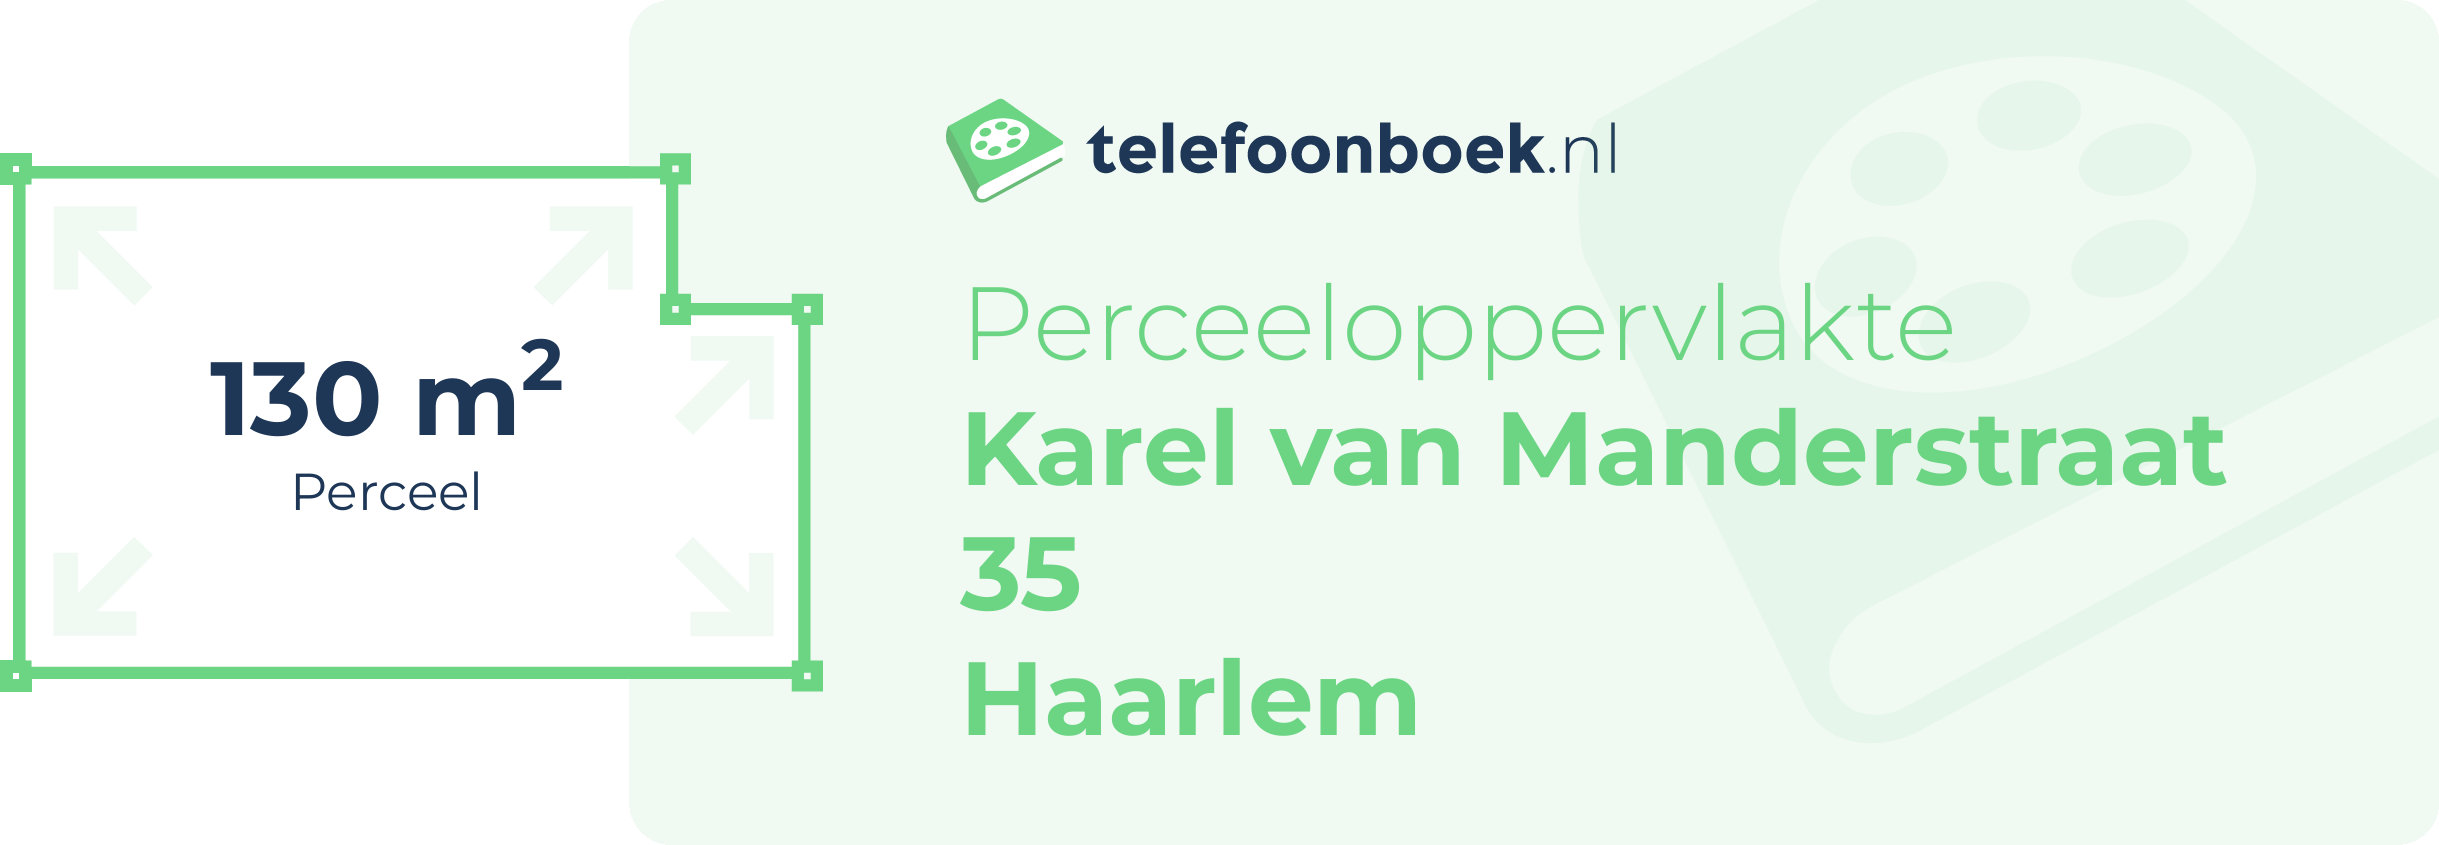 Perceeloppervlakte Karel Van Manderstraat 35 Haarlem